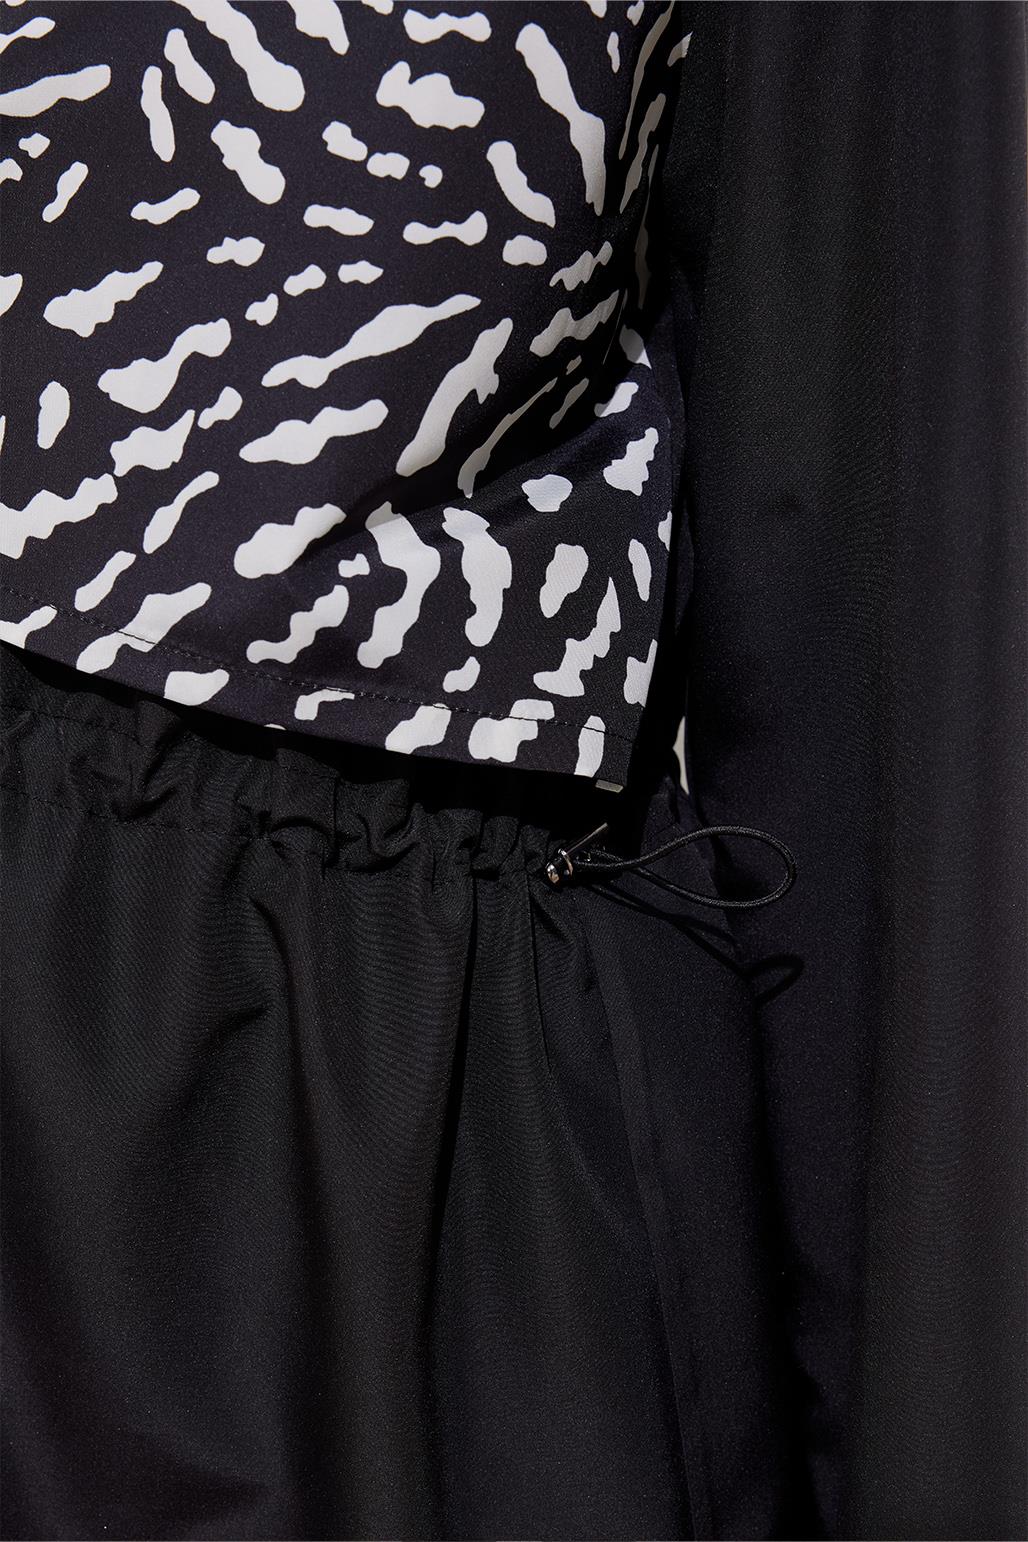 Parachute Patterned Tie-Up Modest Swimsuit Set Black